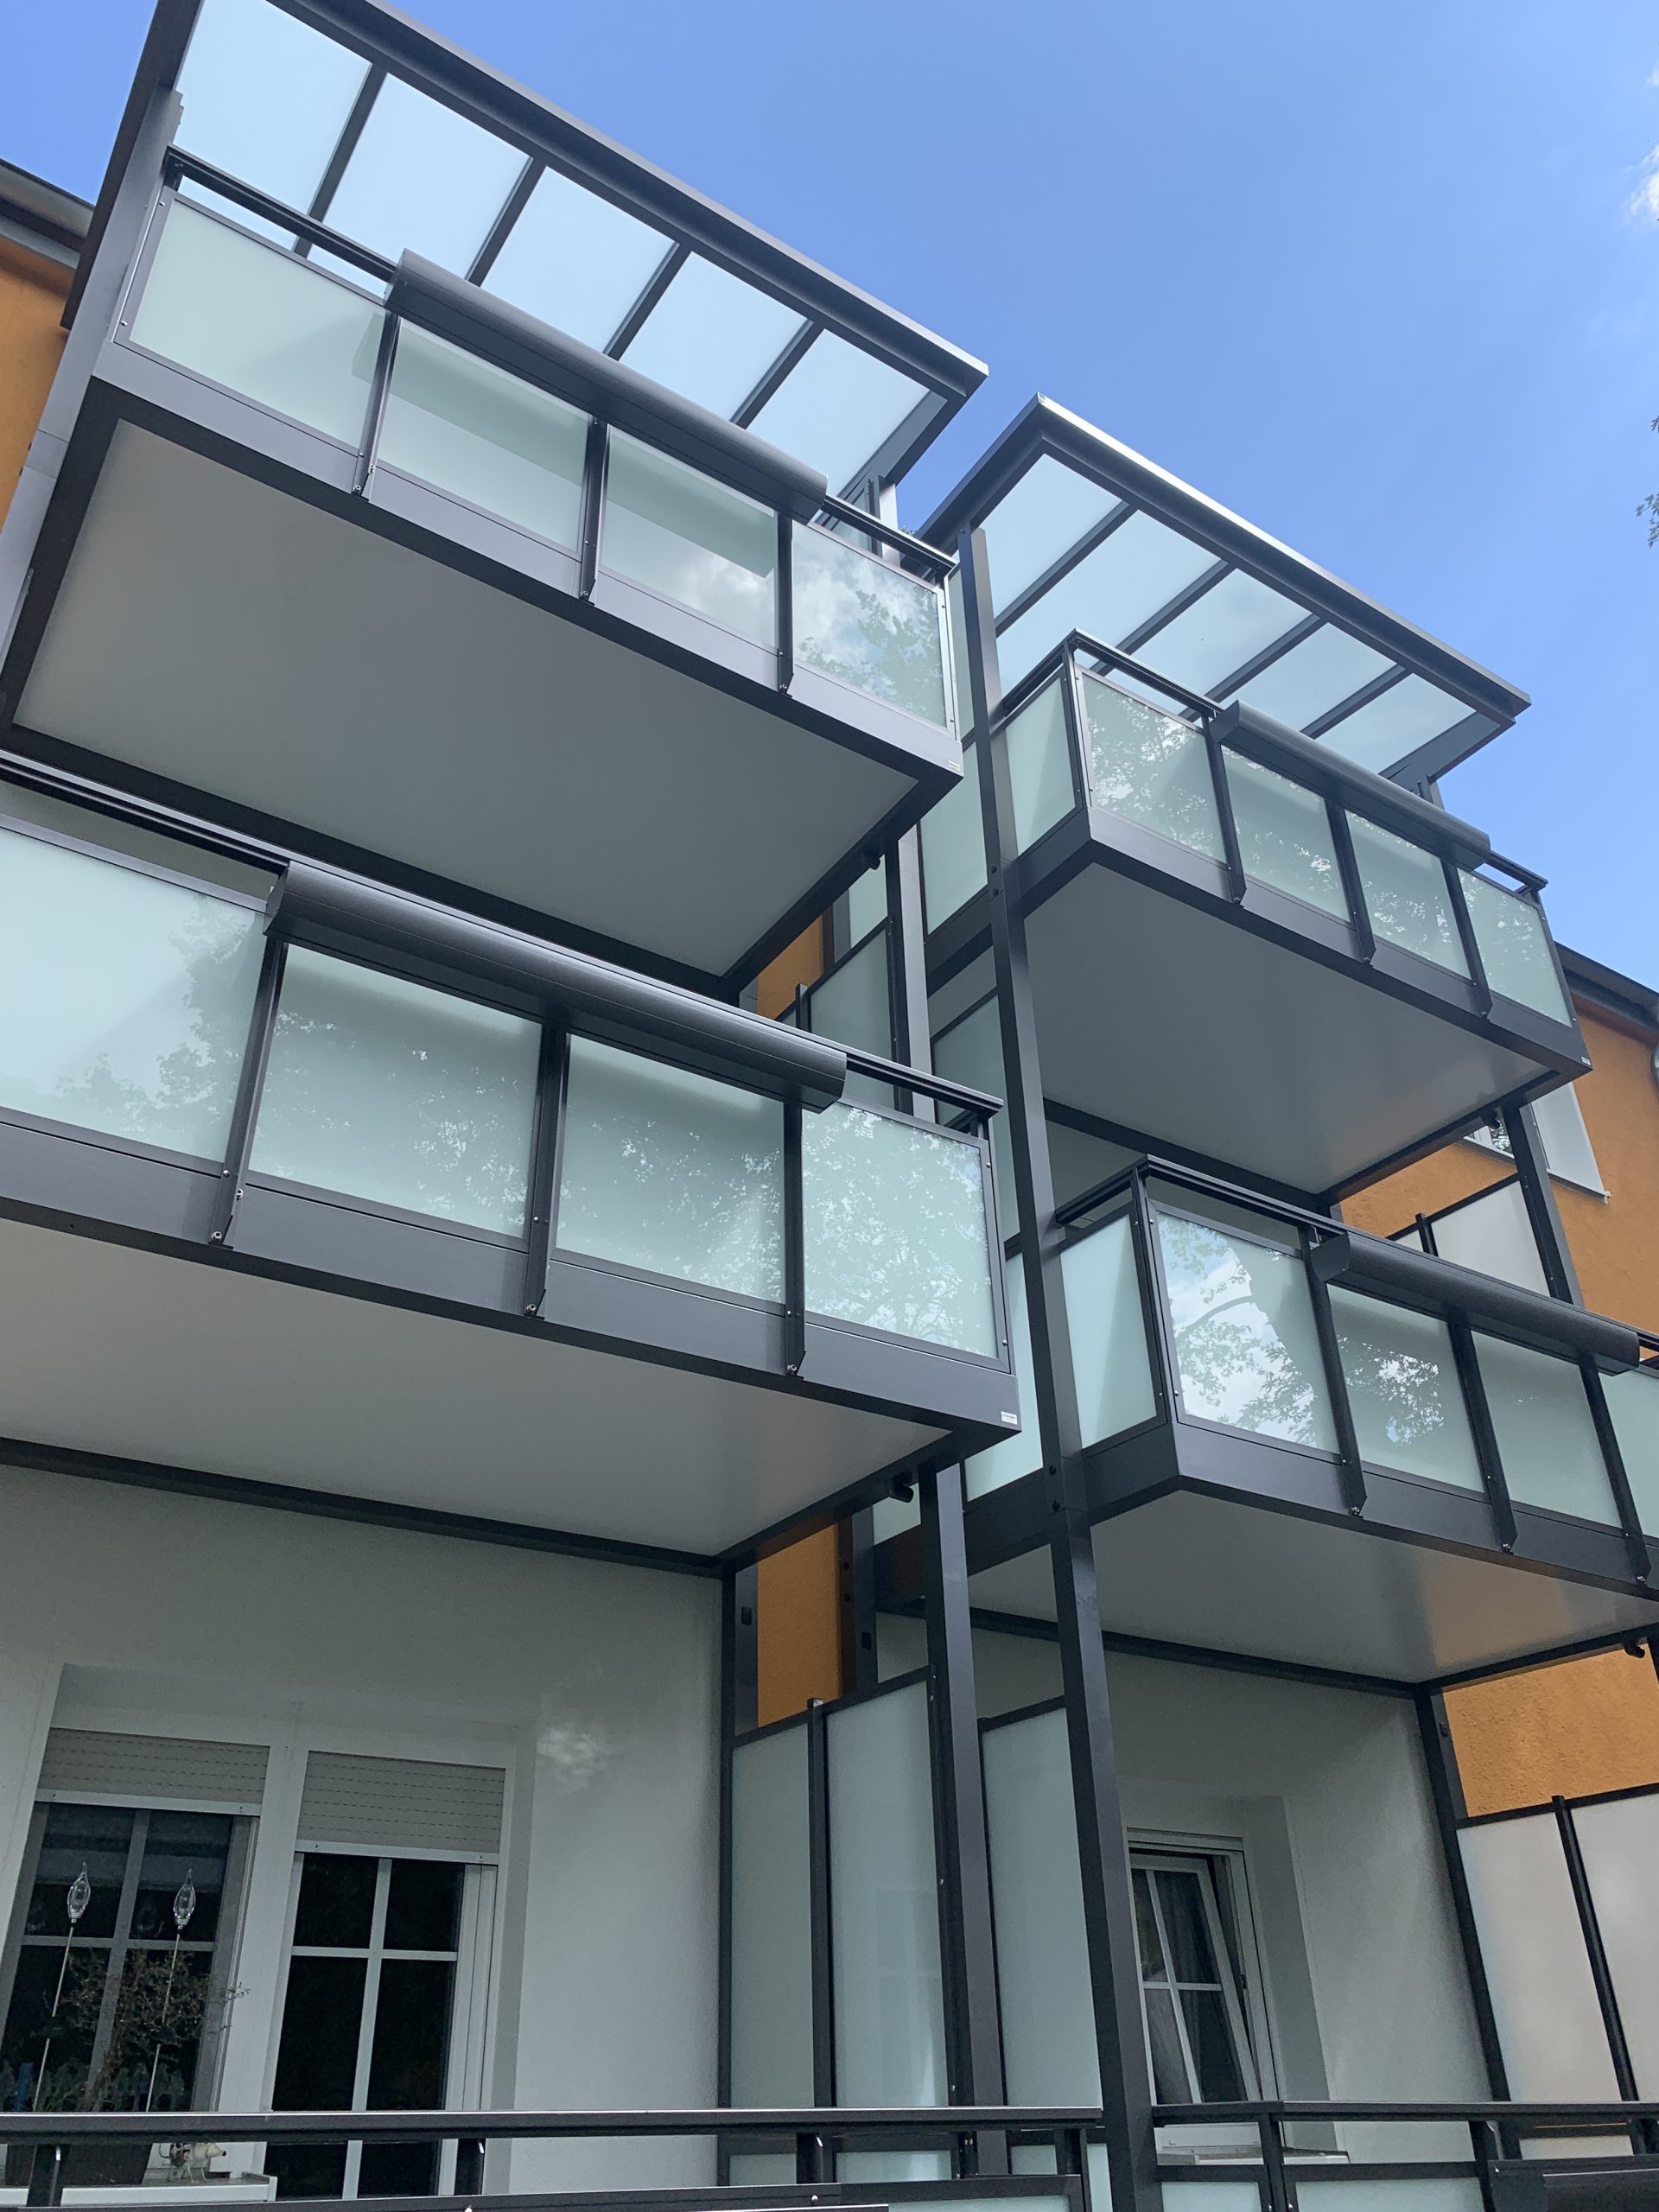 Aluminiumbalkone mit Glaswand und Balkonkasten im Wohnungsbau